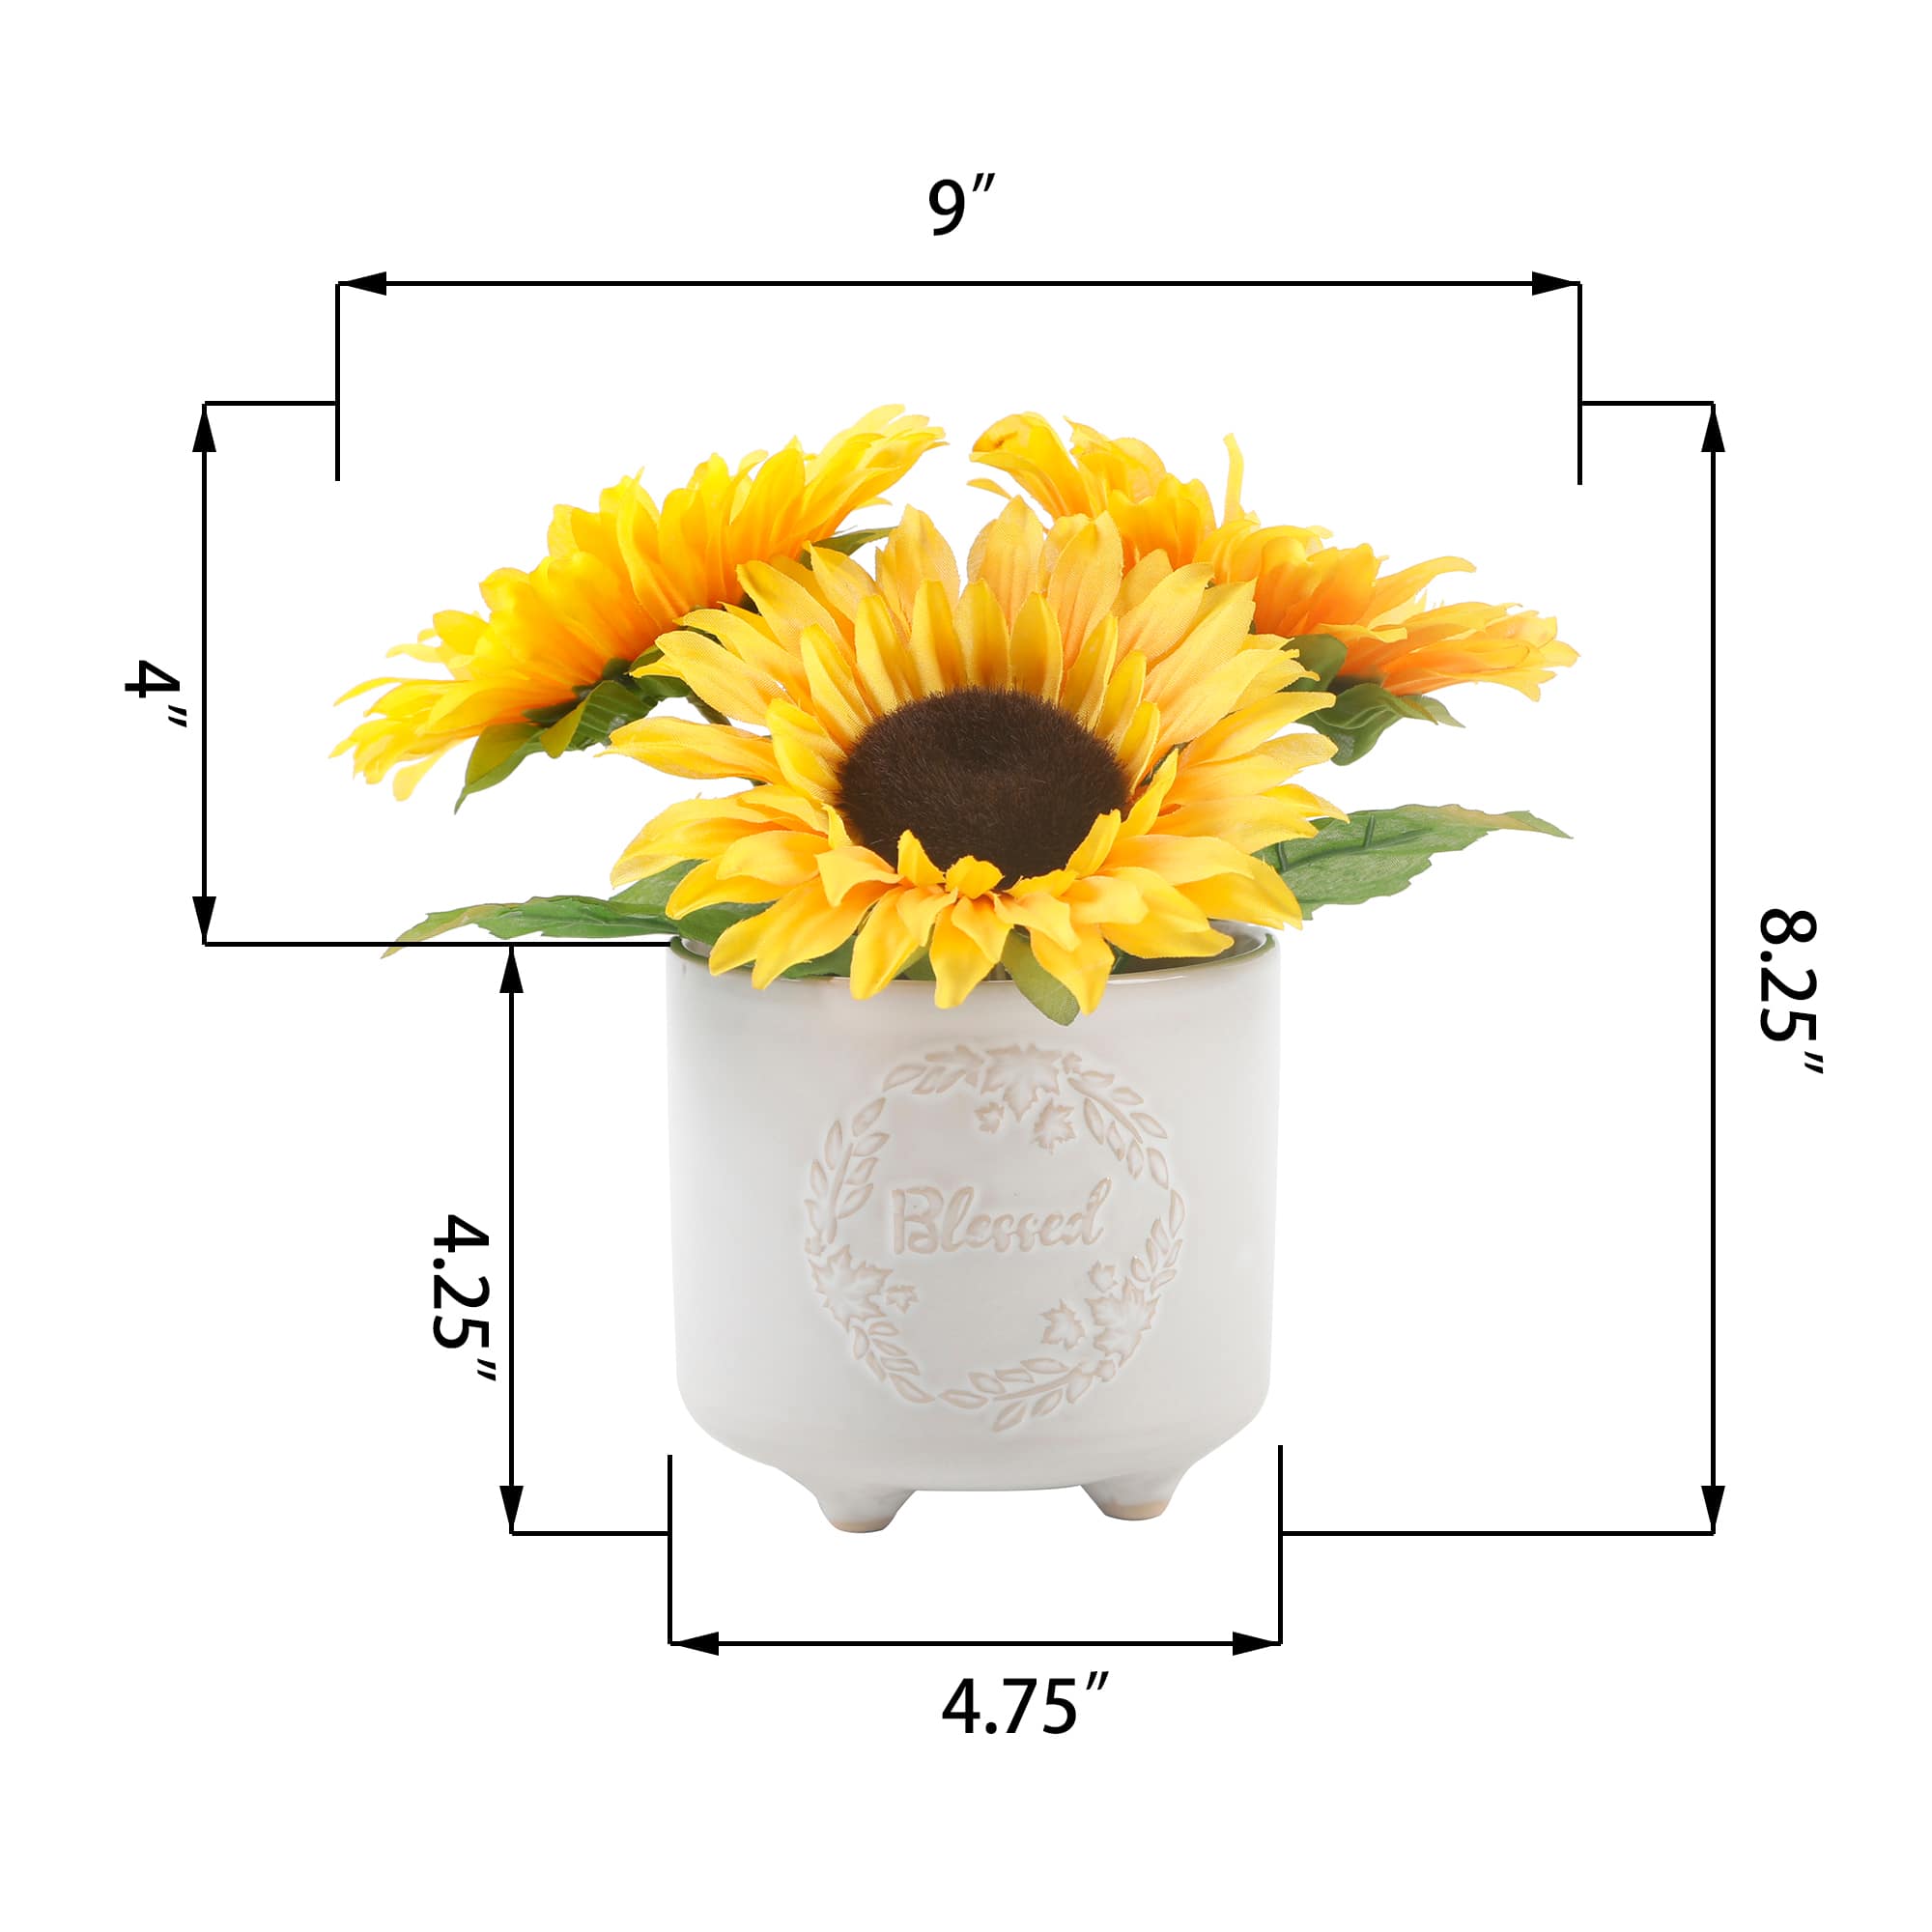 Flora Bunda&#xAE; Sunflowers in Blessed Ceramic Planter